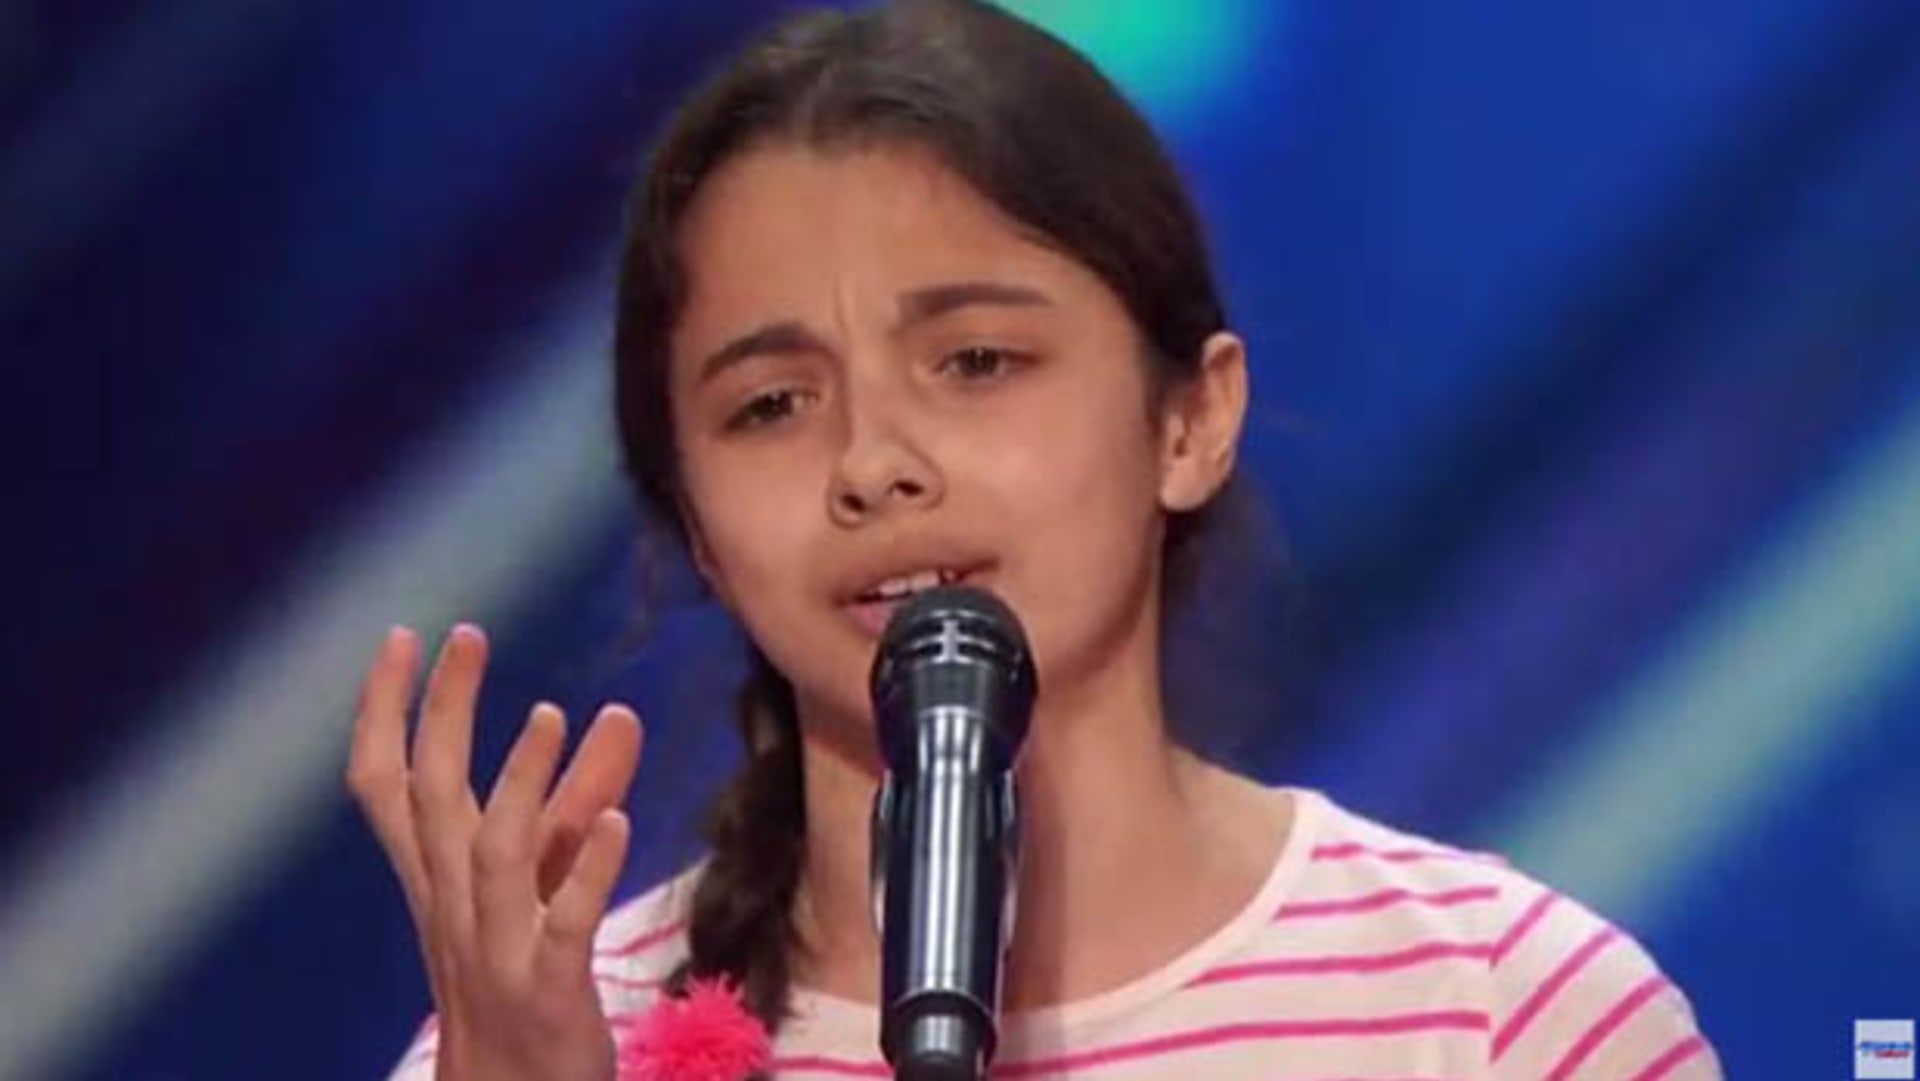 Třináctiletá dívenka uchvátila americký Talent. Až to uvidíte, pochopíte, proč.